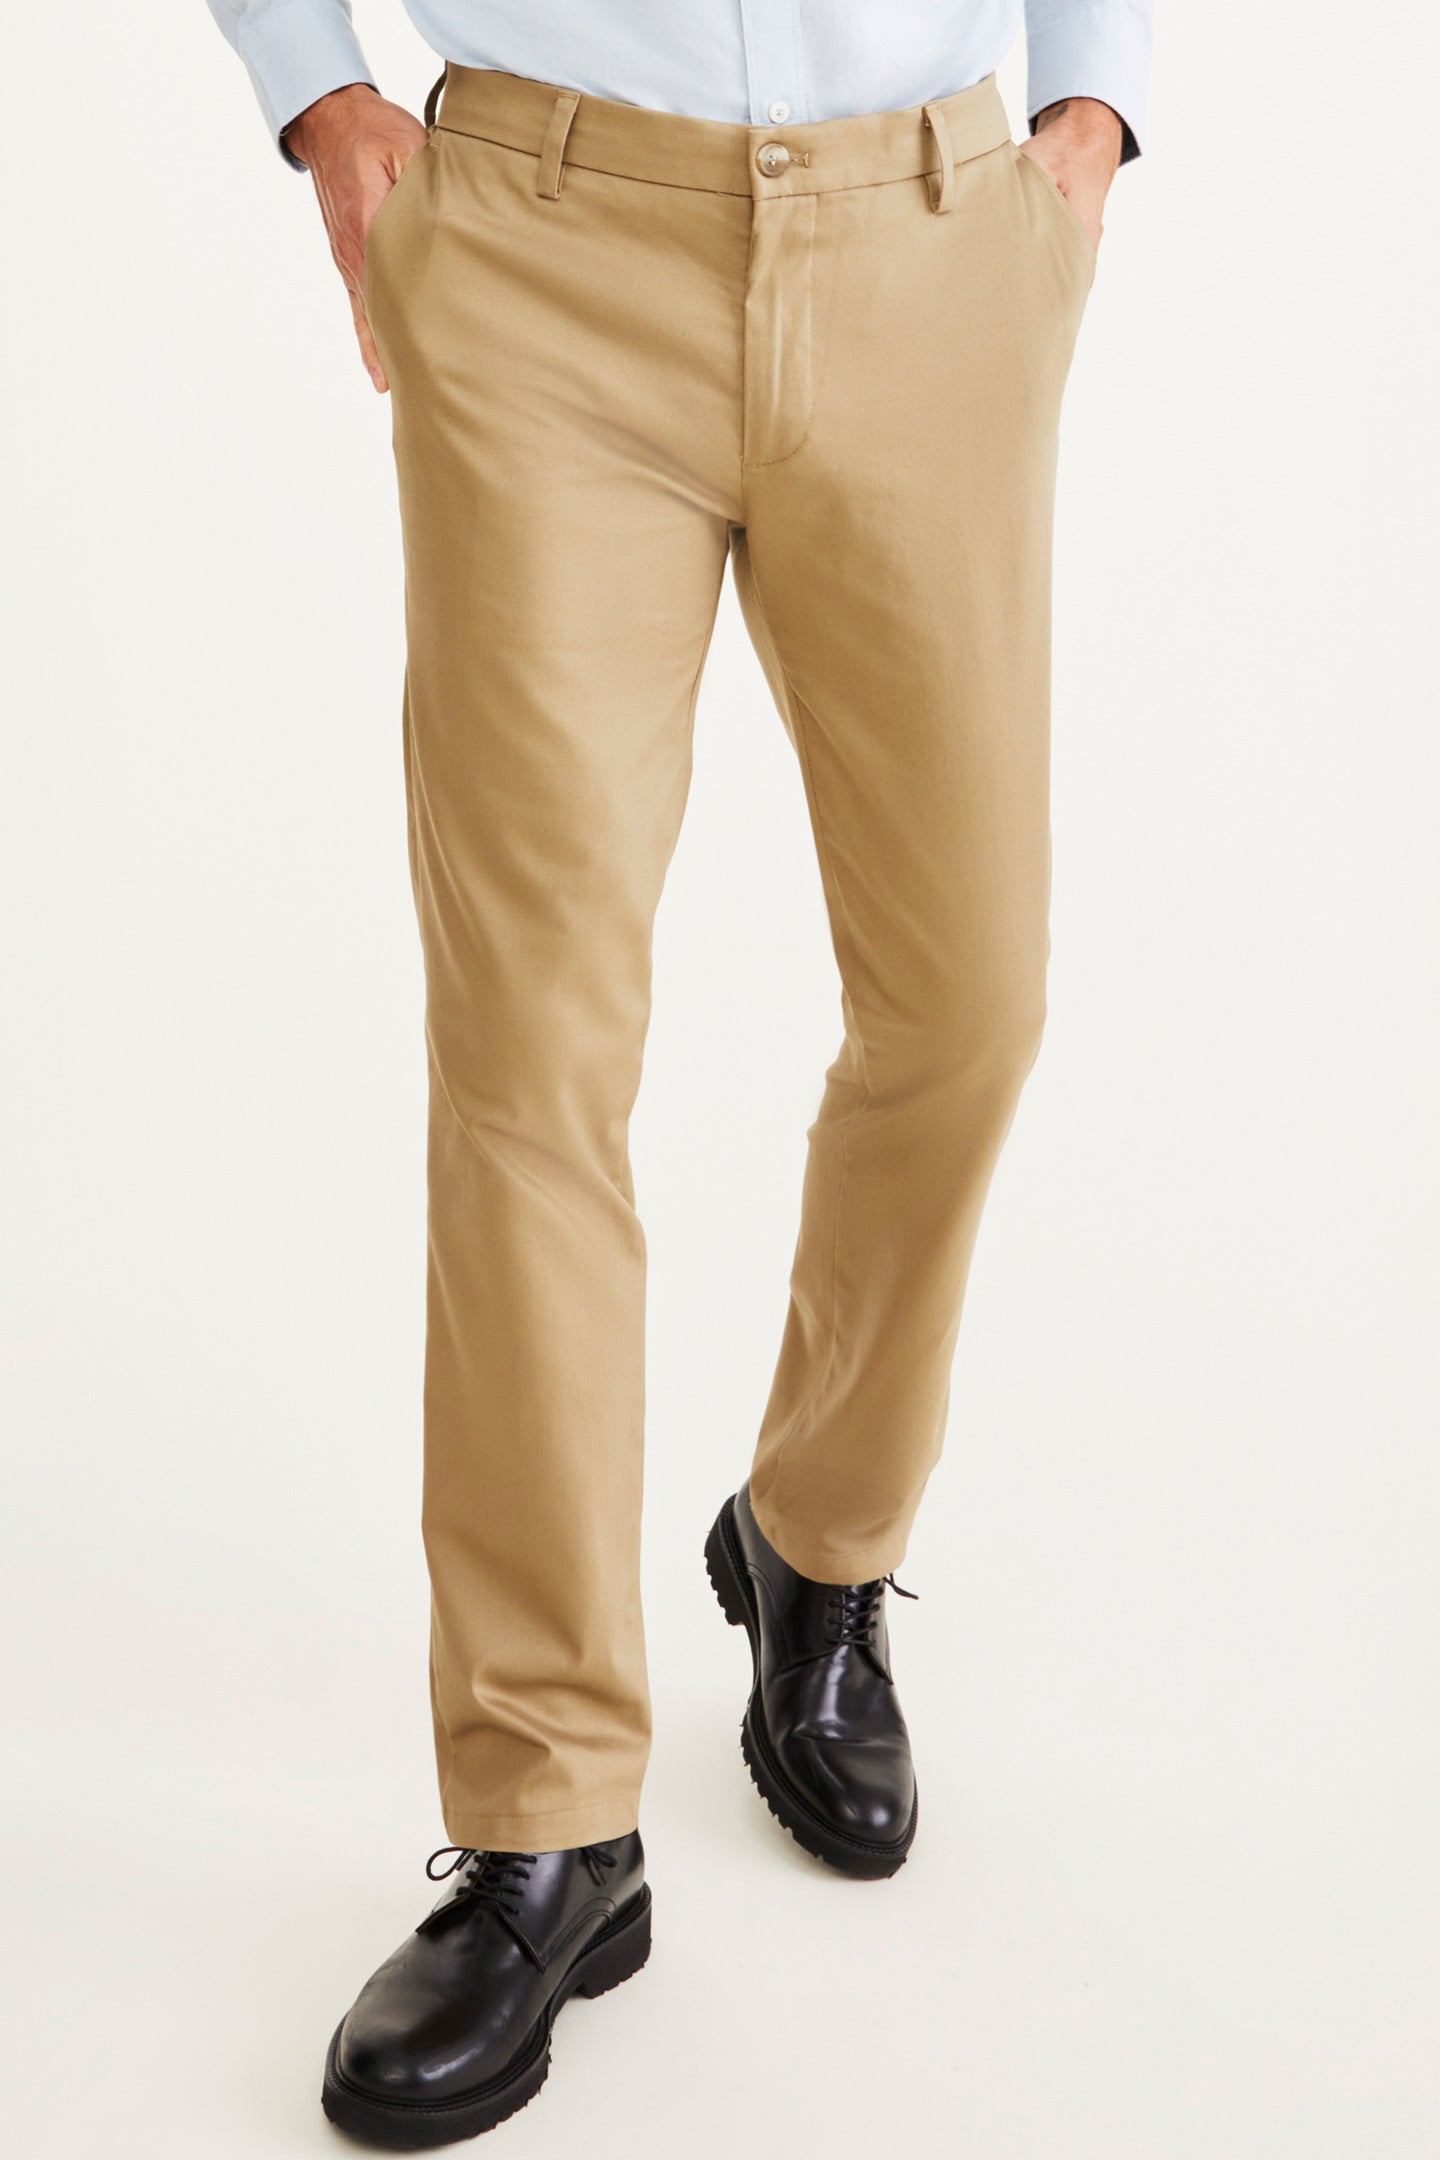 Men's Khaki Pants, Trousers & | Dockers® US